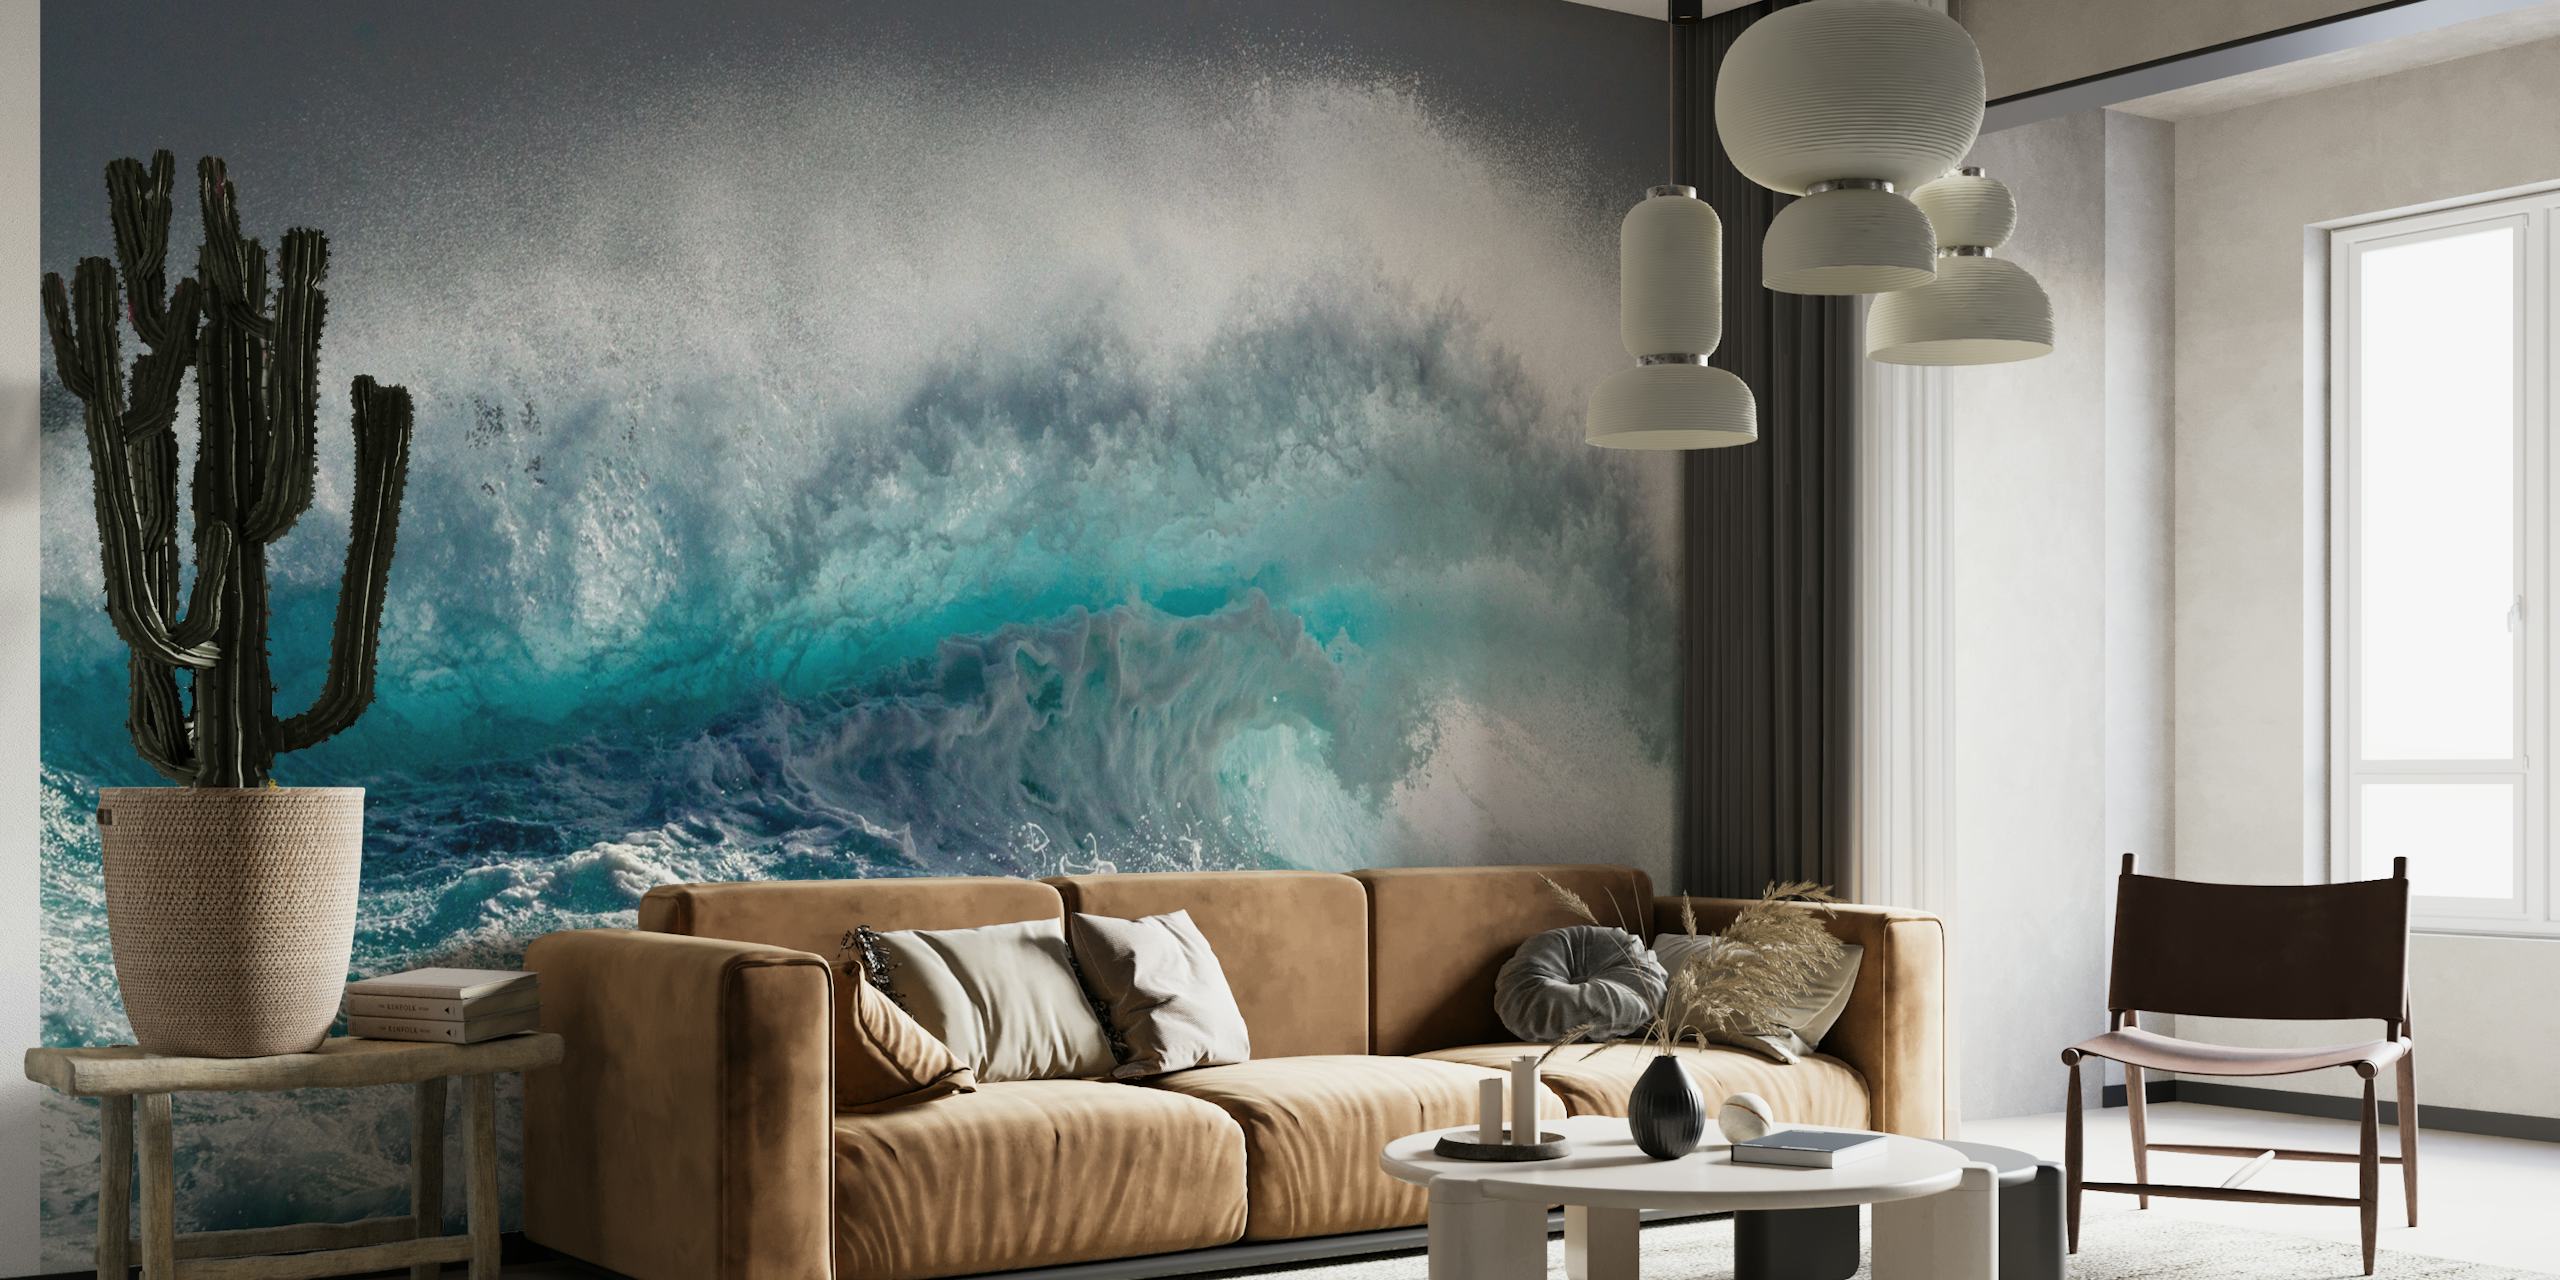 Mural de Mighty Water que representa una ola impresionante en ricos tonos de azul y blanco